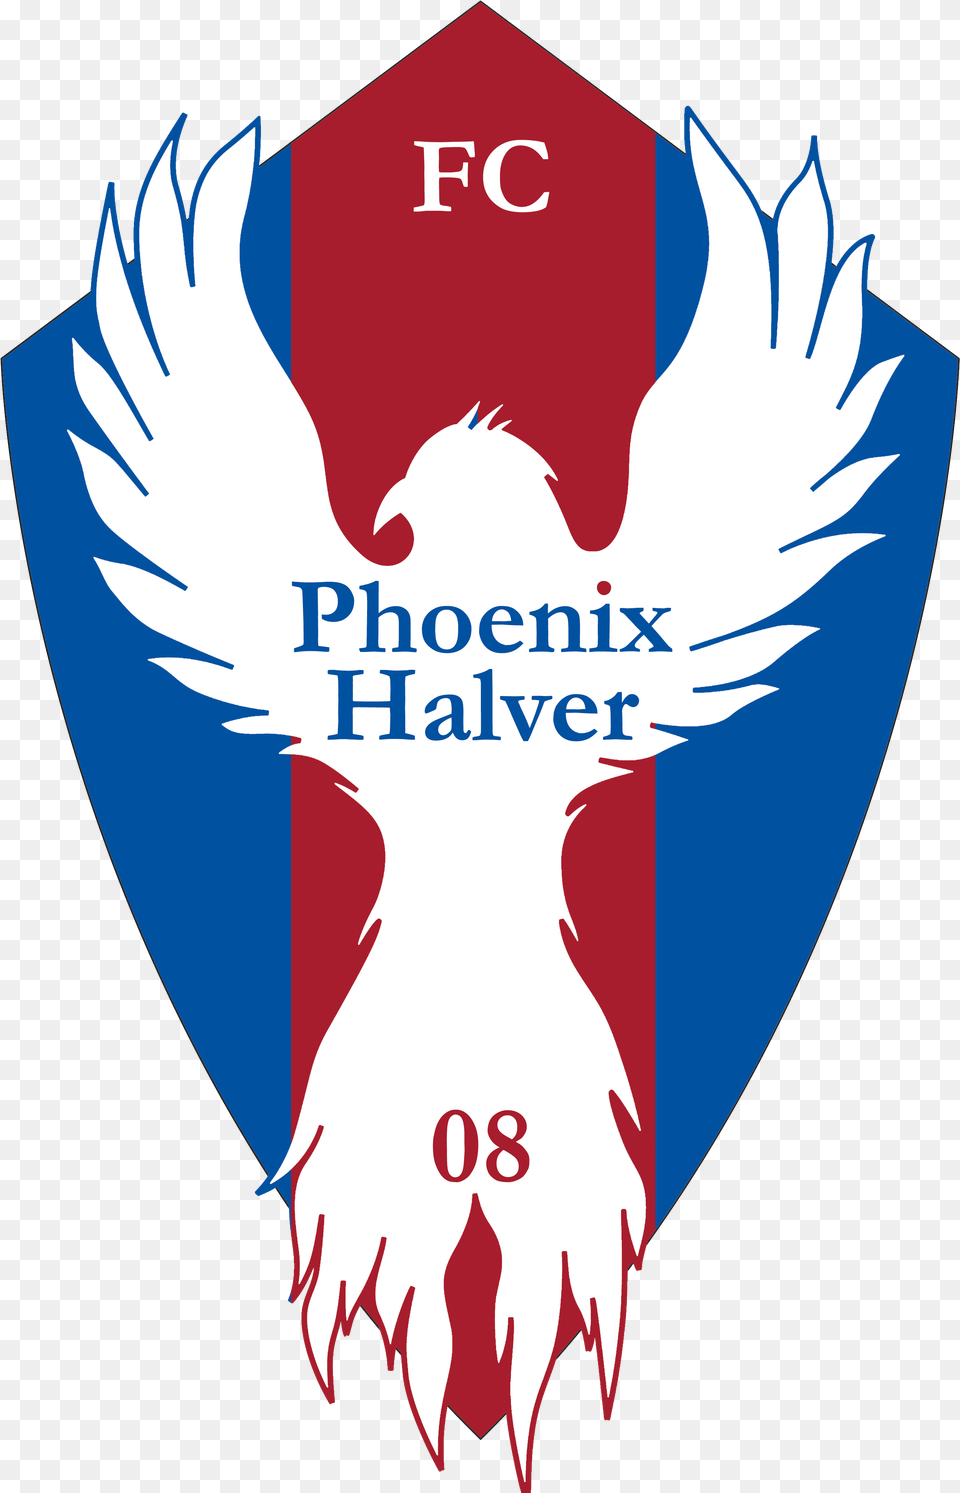 Fc Phoenix Halver Illustration, Logo, Badge, Symbol, Emblem Free Png Download